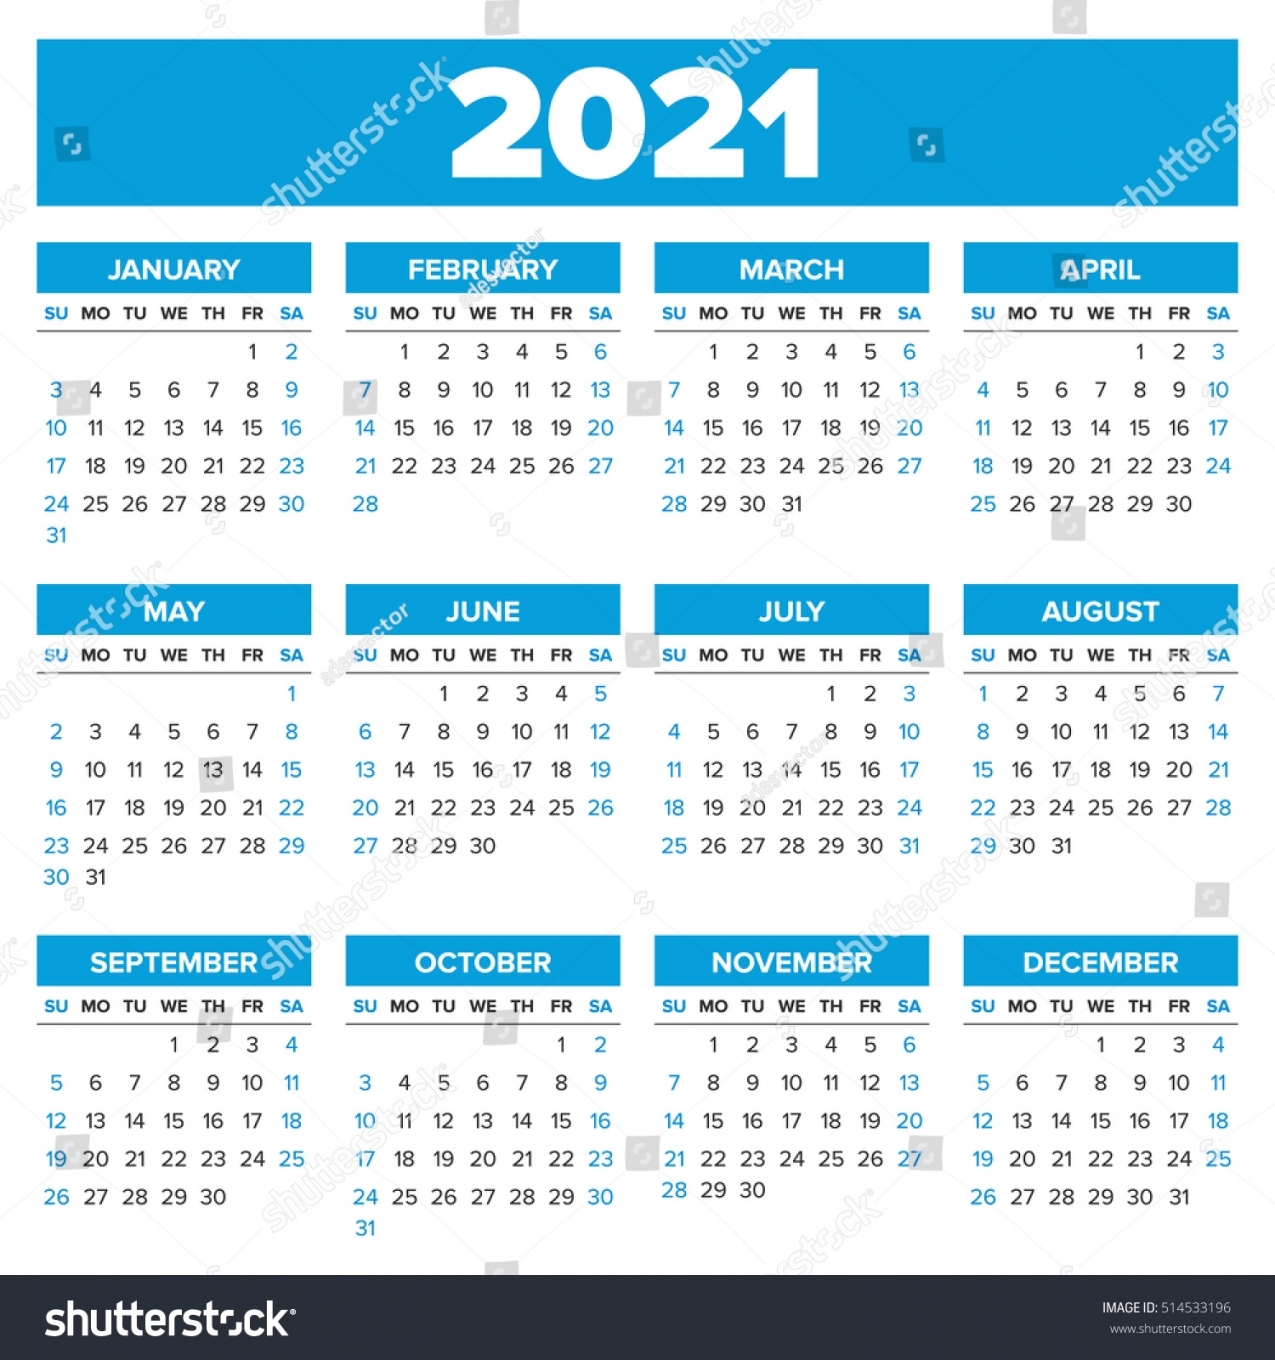 2021 Weekly Calendar Printable